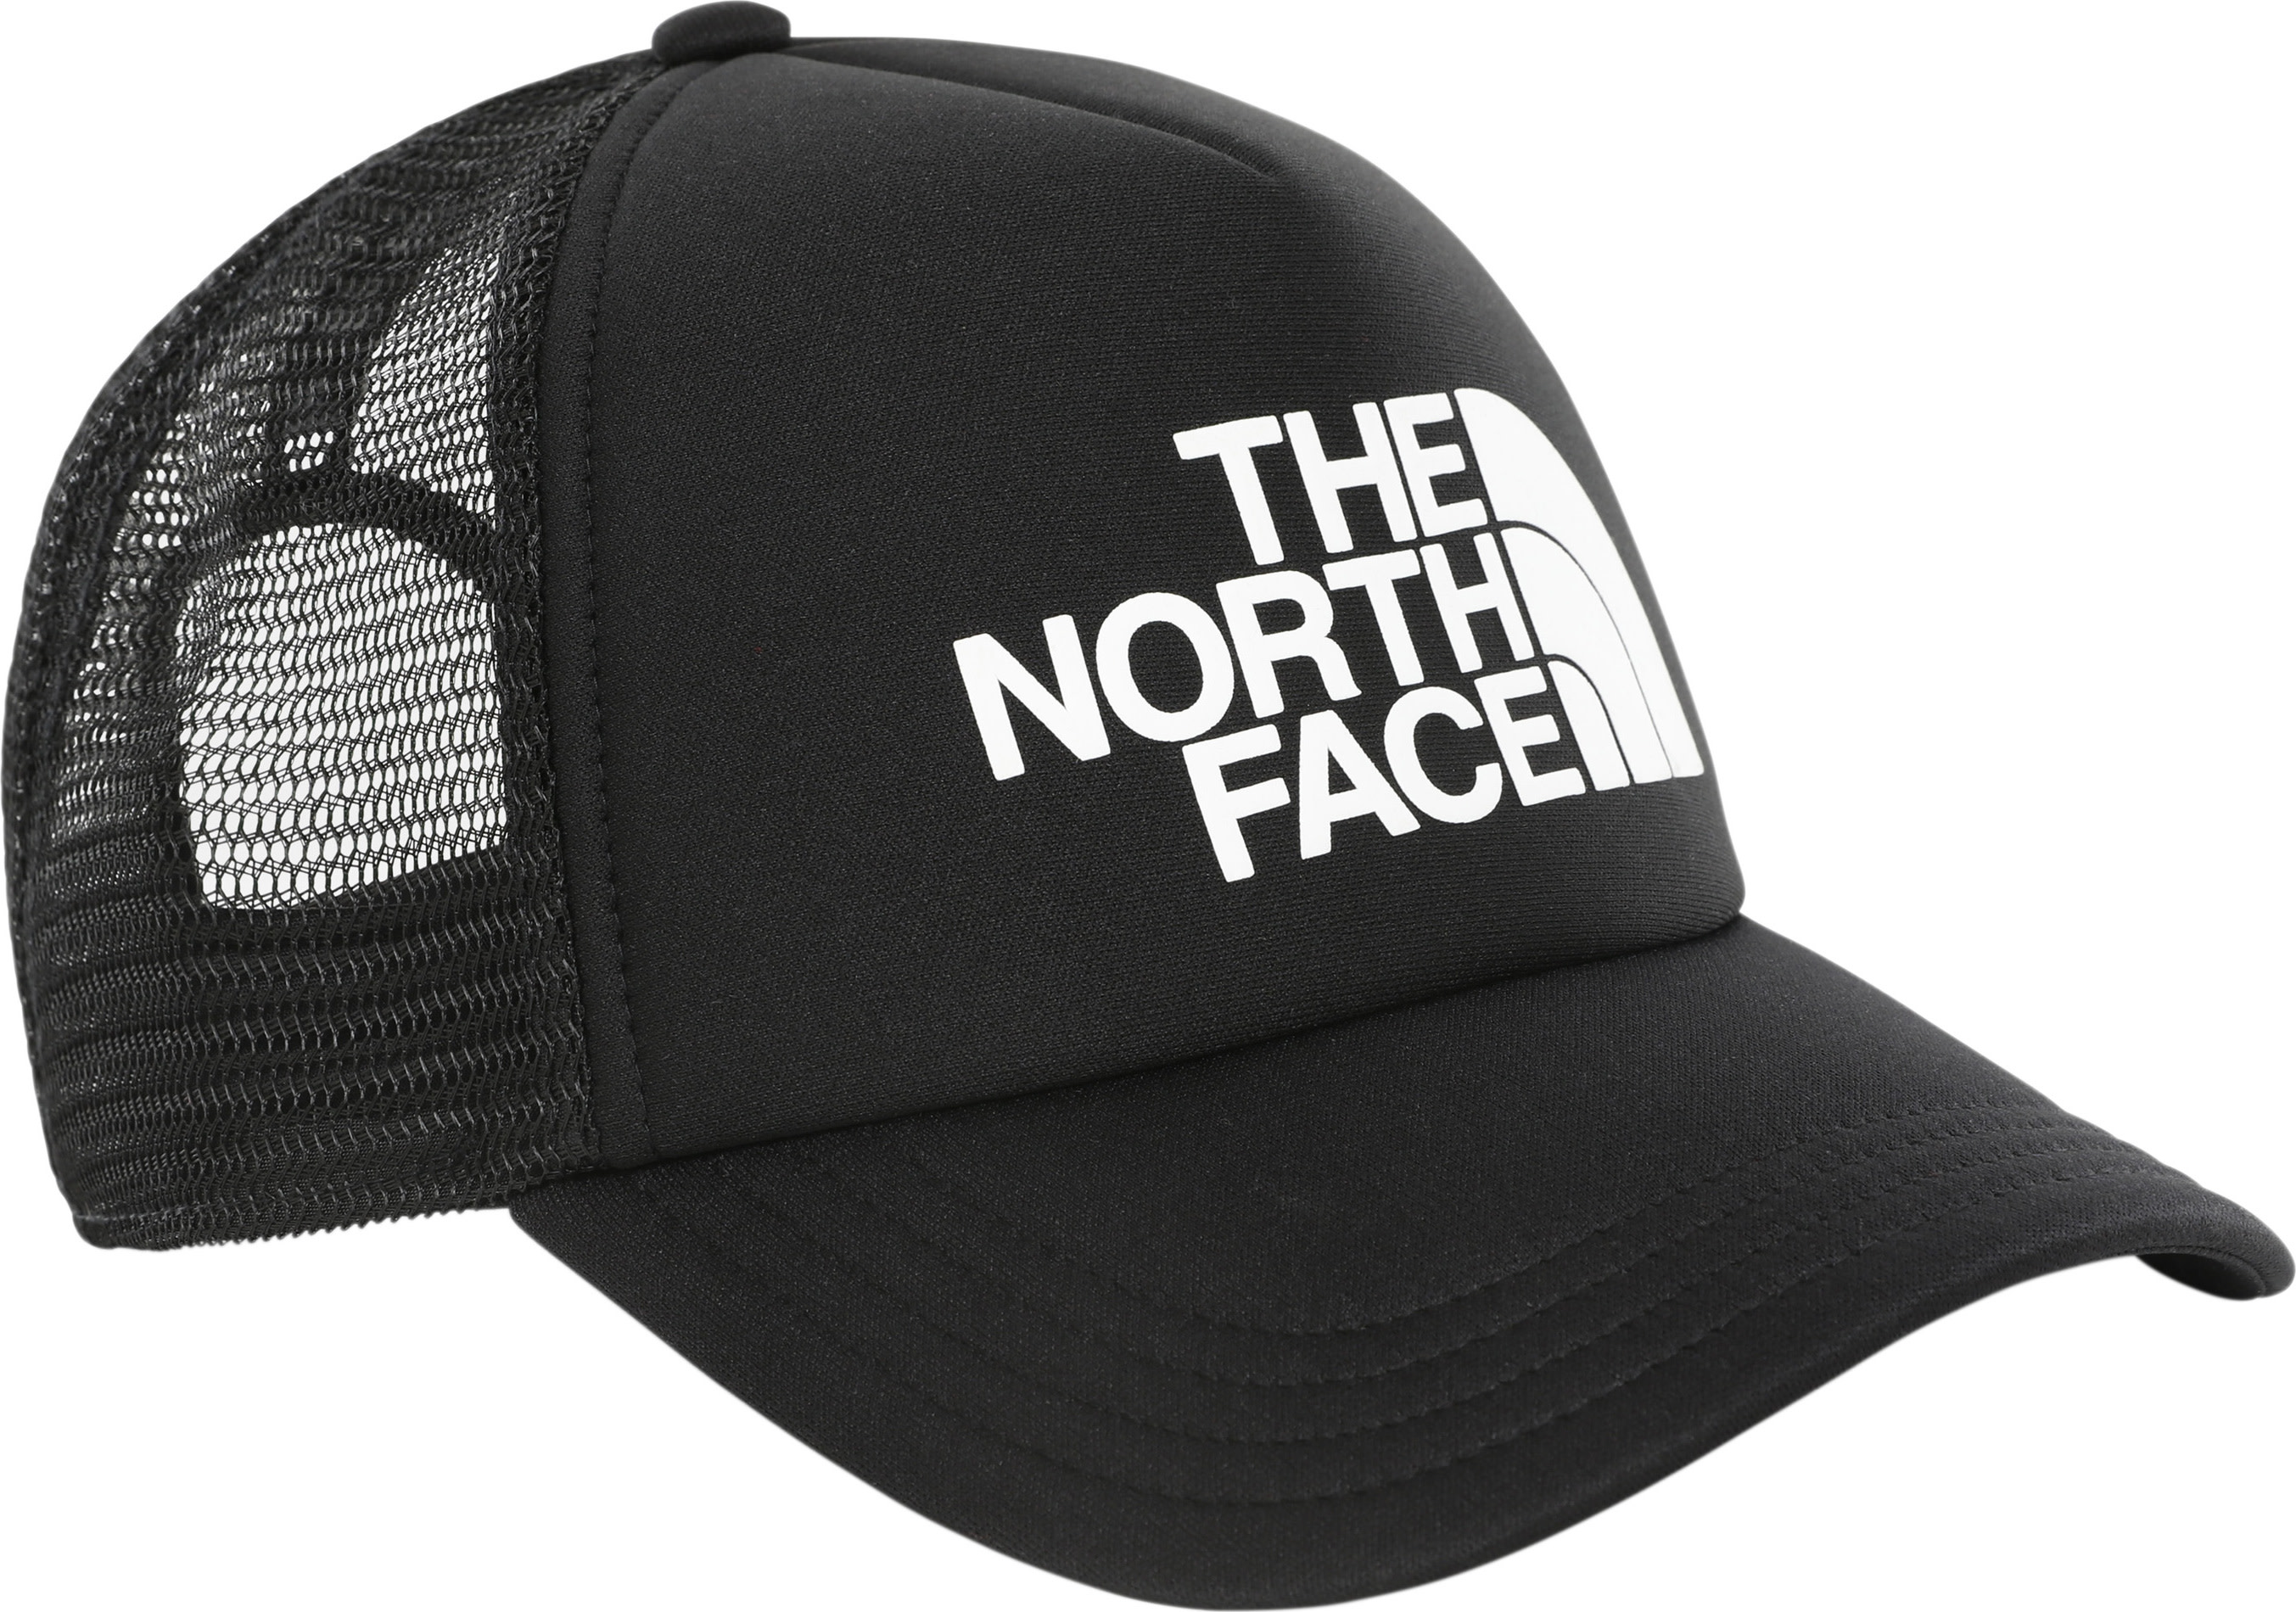 The North Face The North Face TNF Logo Trucker Cap Tnfblack/Tnfwht OneSize, TNF Black/TNF White